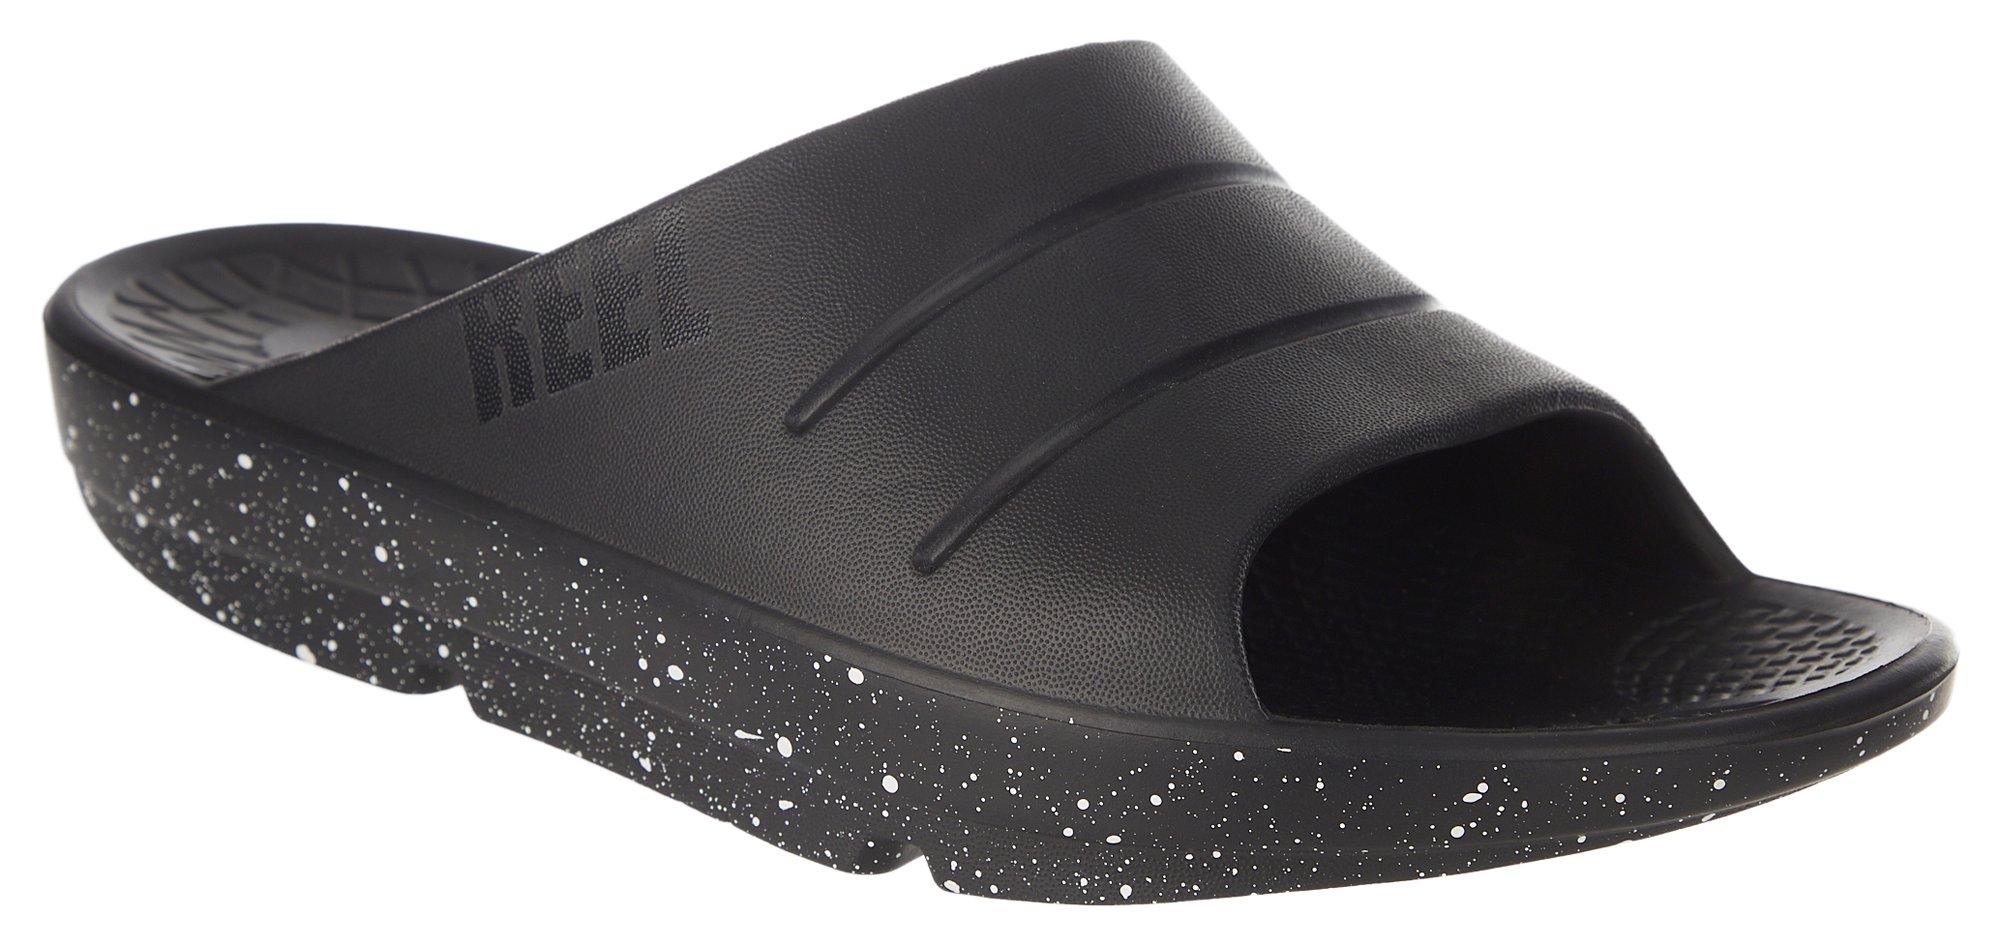 Reel Legends Mens Coast Slide Sandals - Black Spec - 11 M